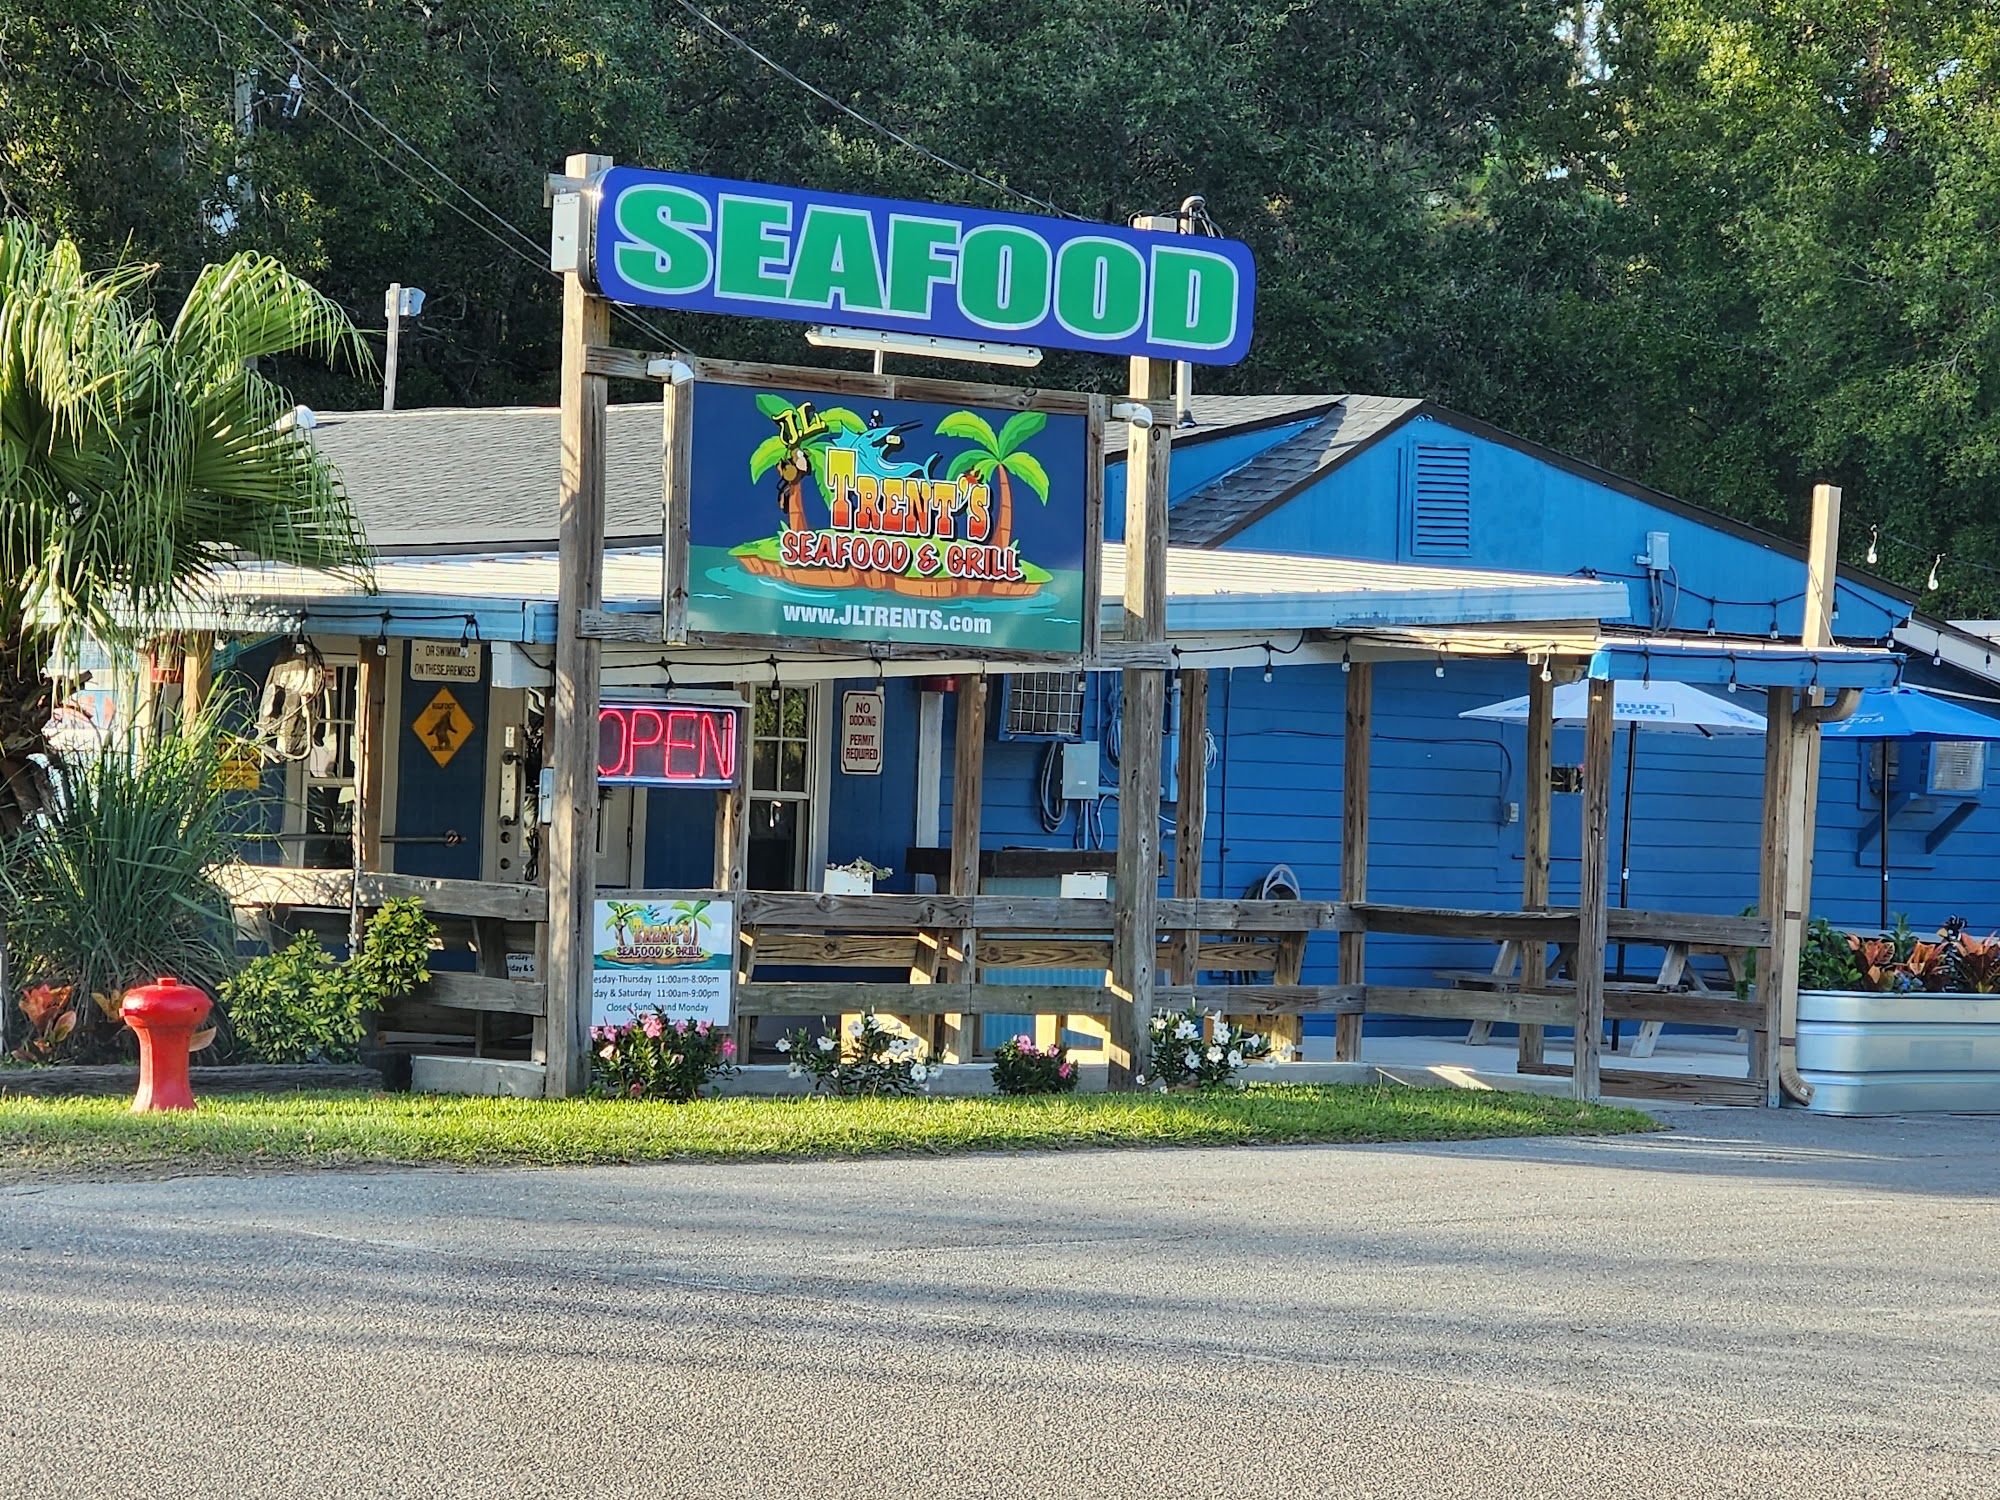 J.L.Trent's Seafood & Grill